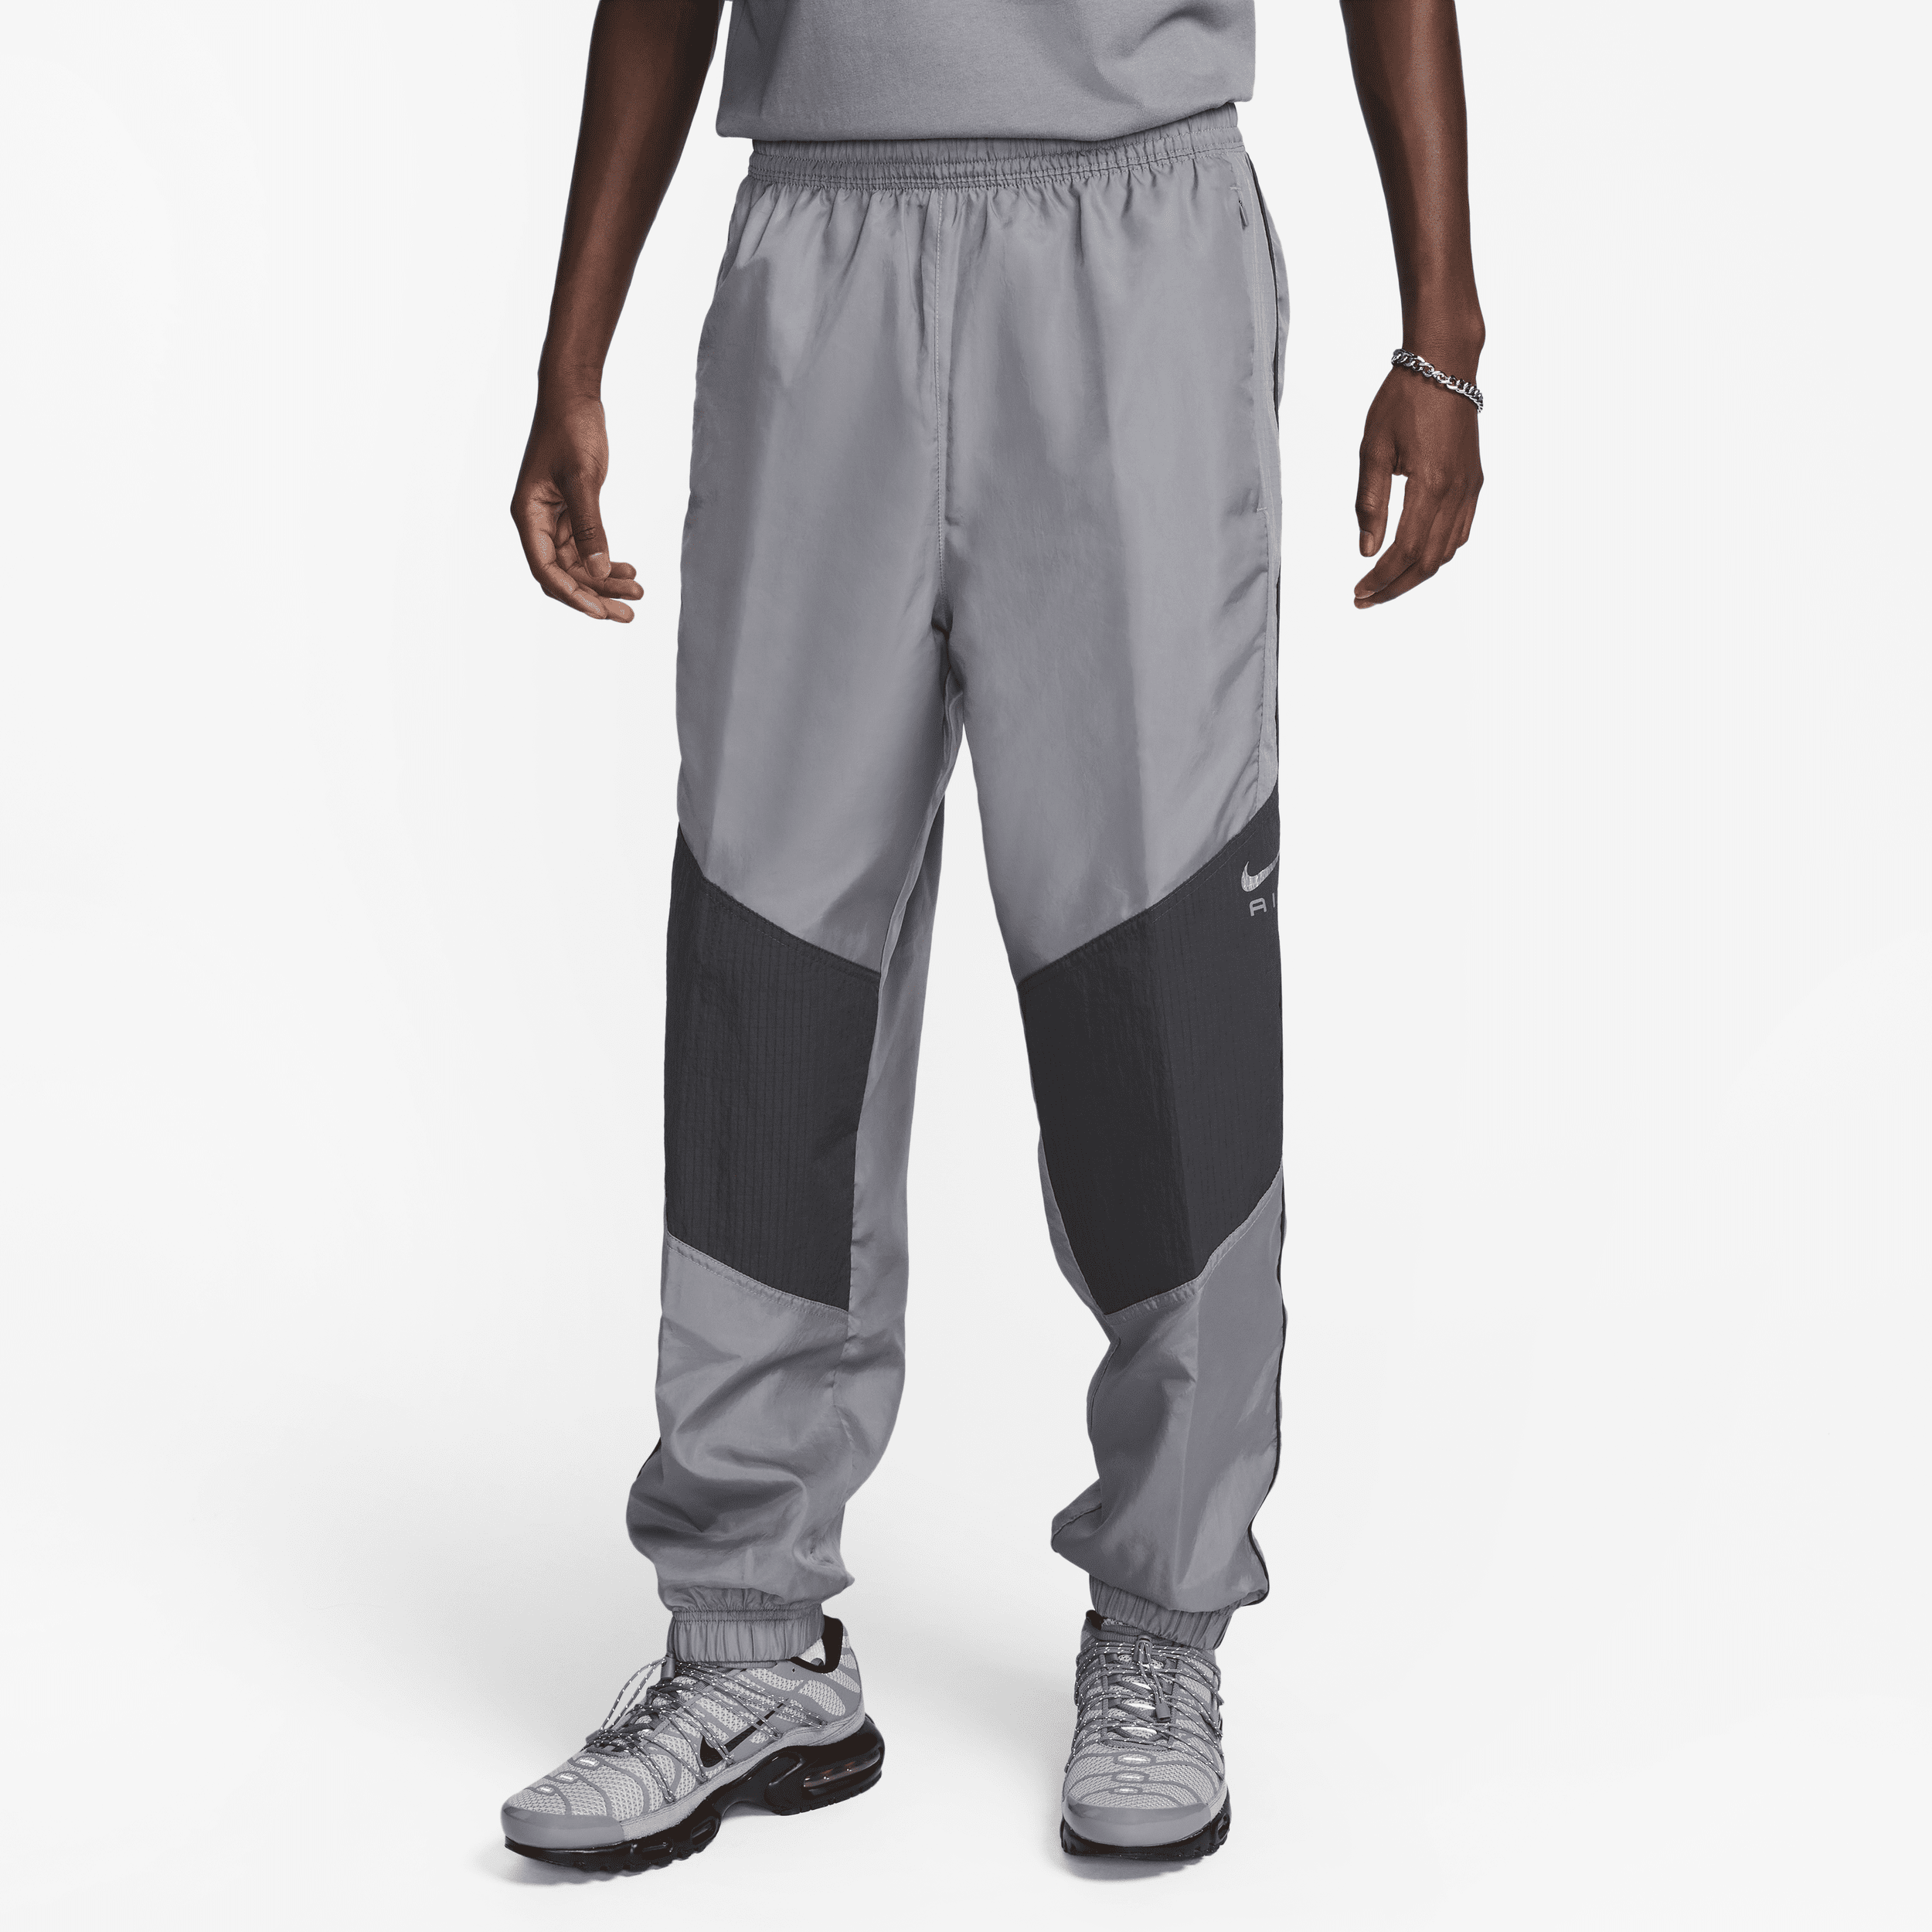 Pantaloni in tessuto Nike Air – Uomo - Grigio